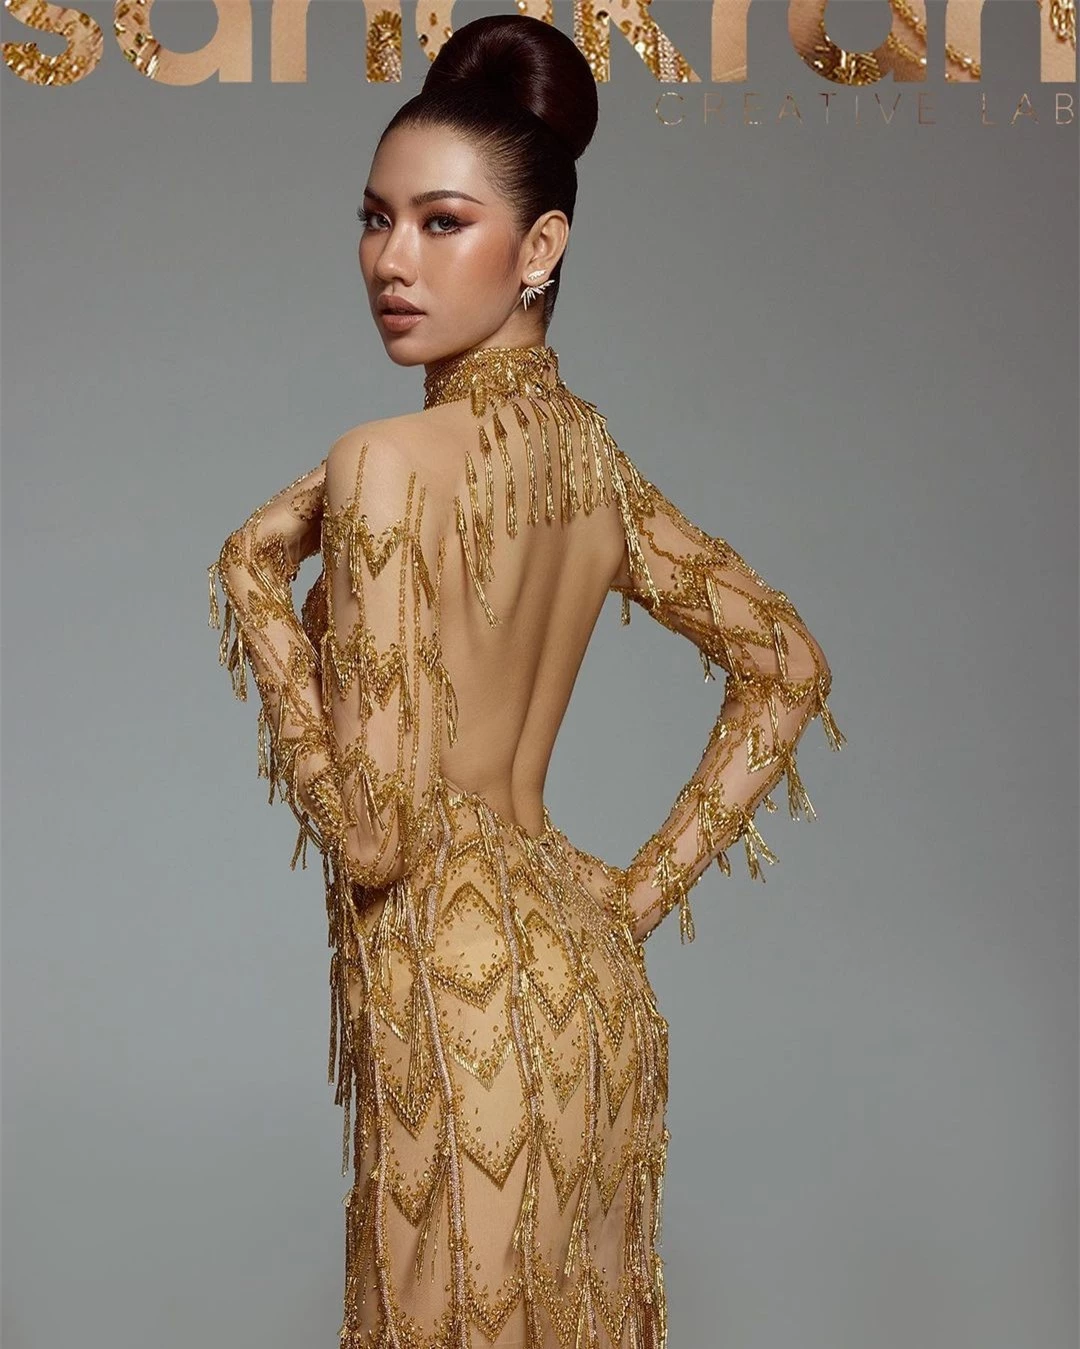 Tân Hoa hậu Hoàn vũ Campuchia được khen ngợi ảnh 12